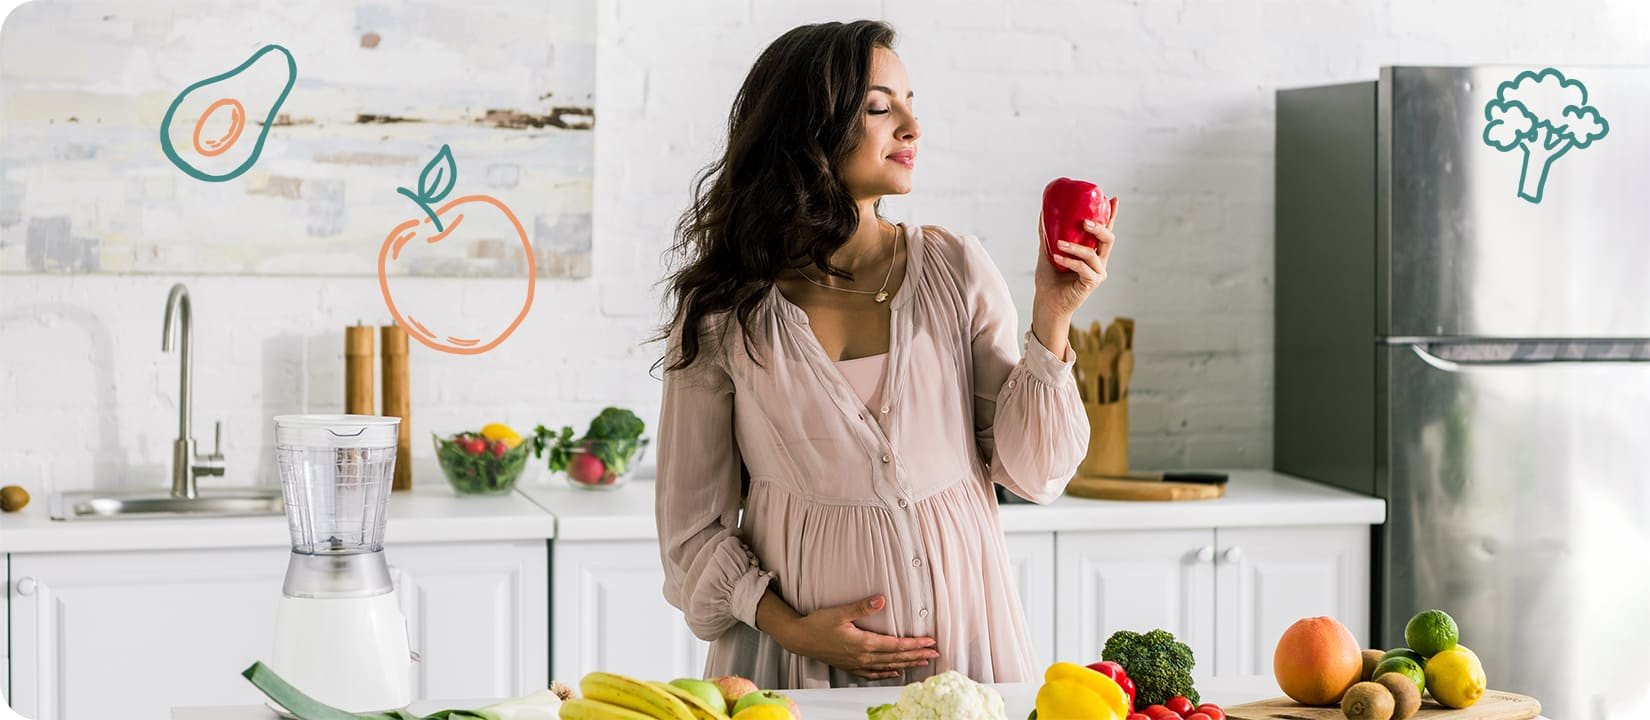 Можно ли беременным пить растворимый кофе или столь популярный кофе 3-в-1?